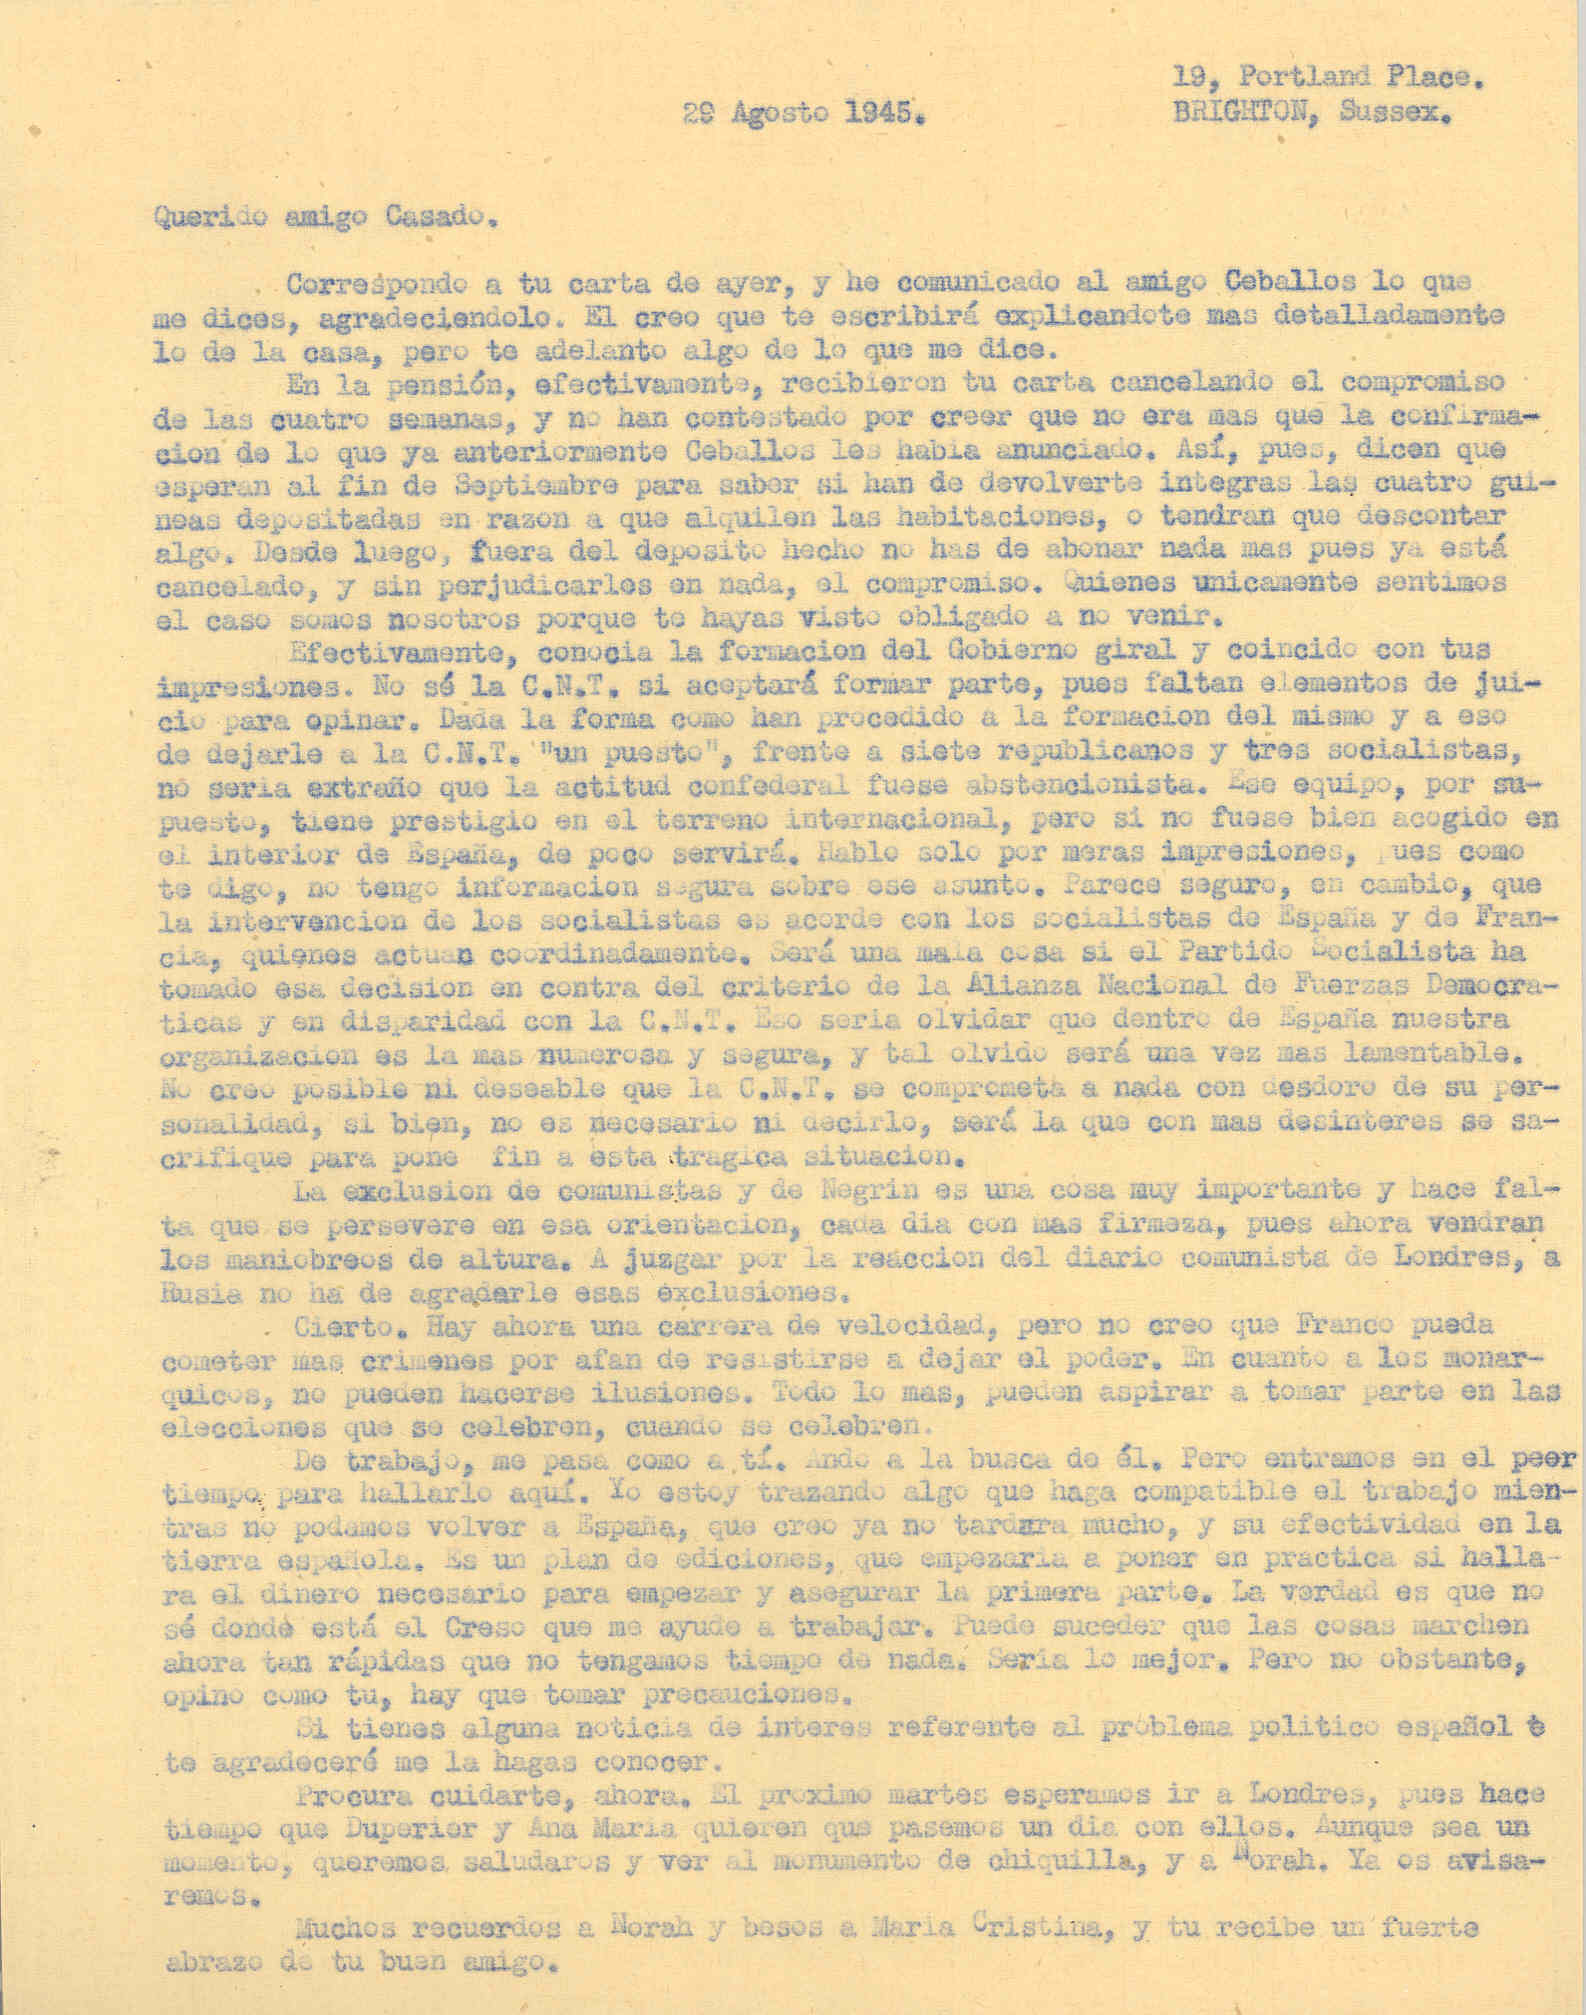 Carta a Segismundo Casado hablando de la formación del gobierno Giral y de la decisión de la CNT de formar parte de él o no.